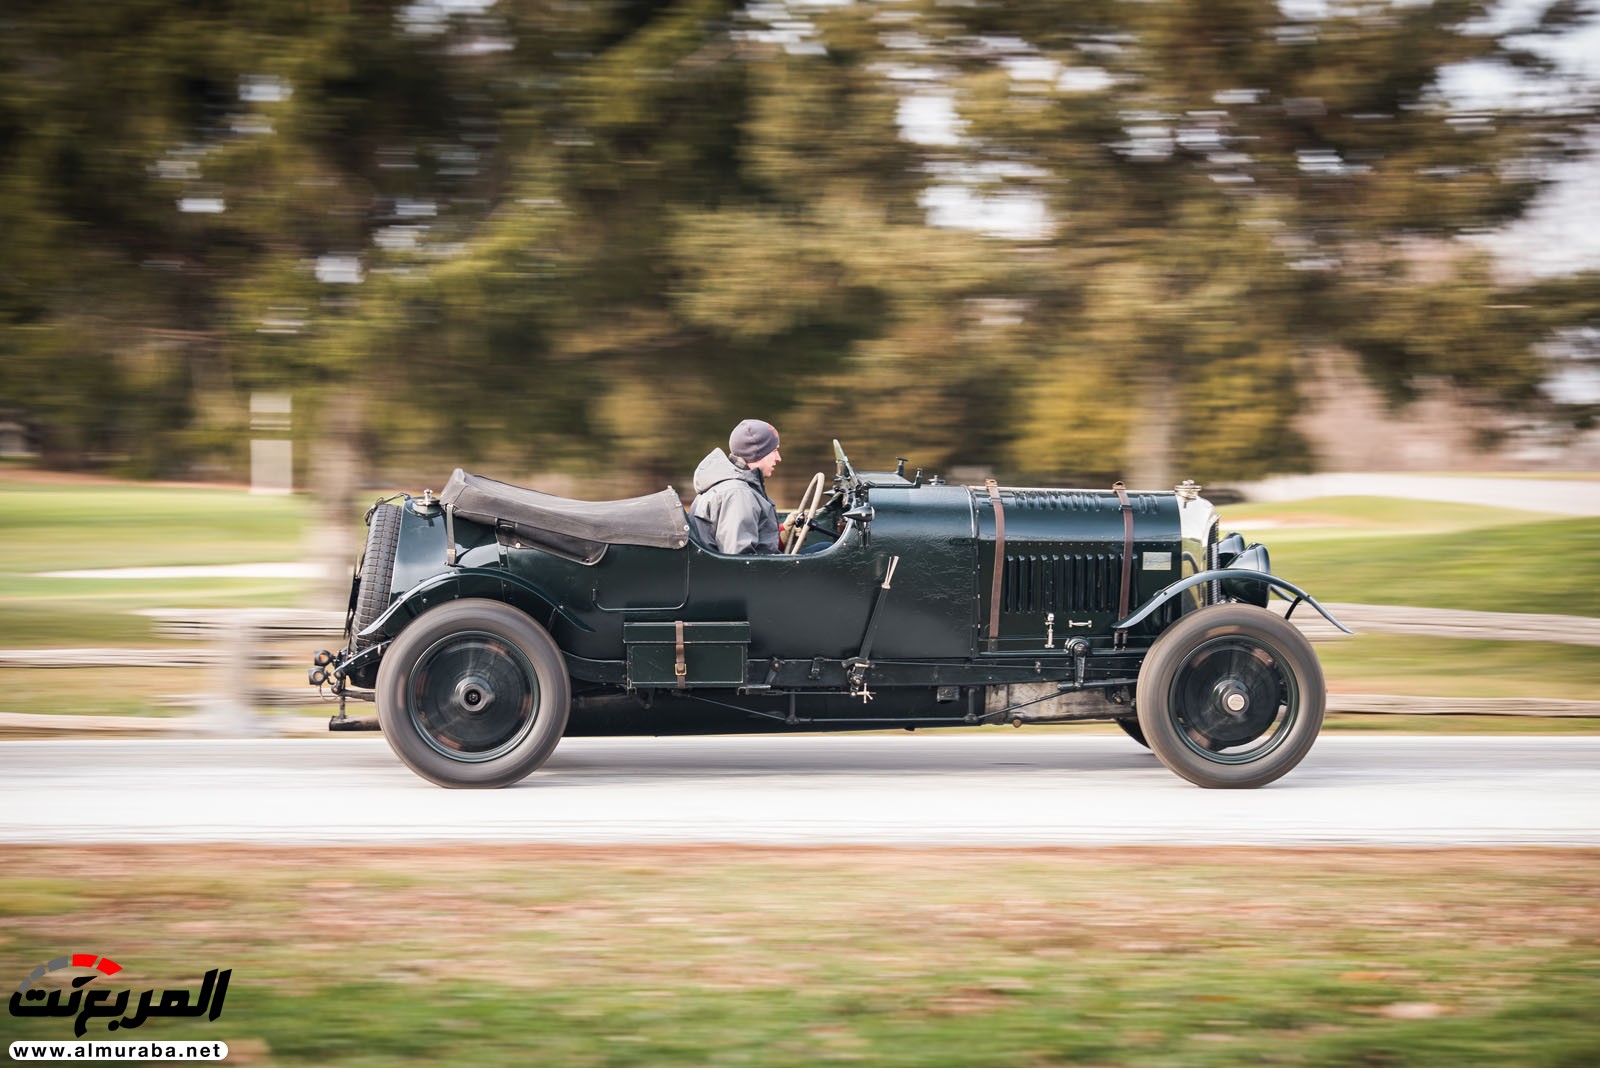 "بالصور" سيارة بنتلي موديل 1928 المشاركة في سباقات لومان تعرض بـ 7 مليون دولار في مزاد علني 122